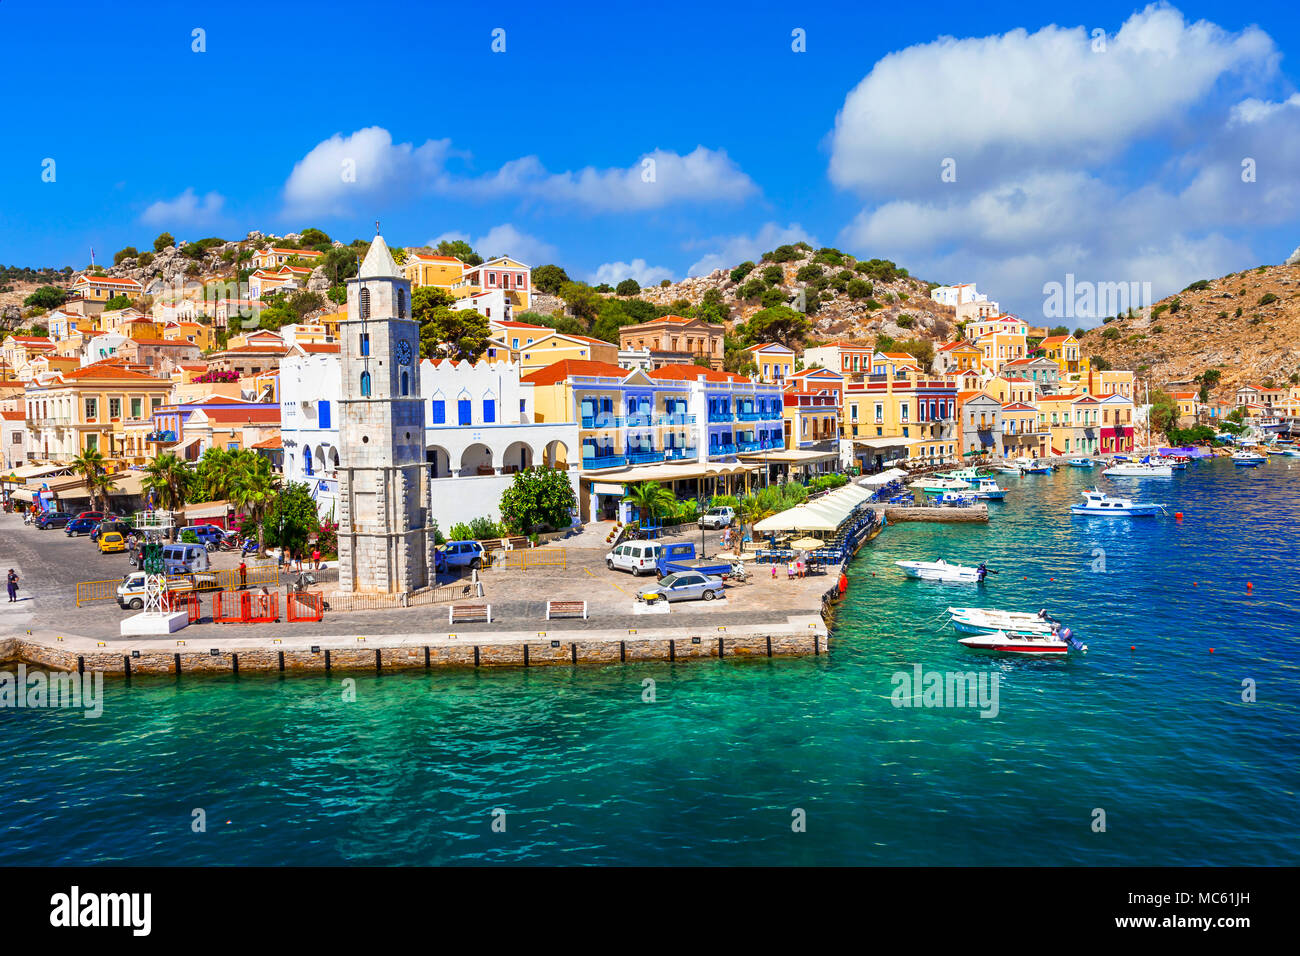 Symi bella vista del villaggio con case tradizionali e mare,Dodecaneso isola,Grecia. Foto Stock